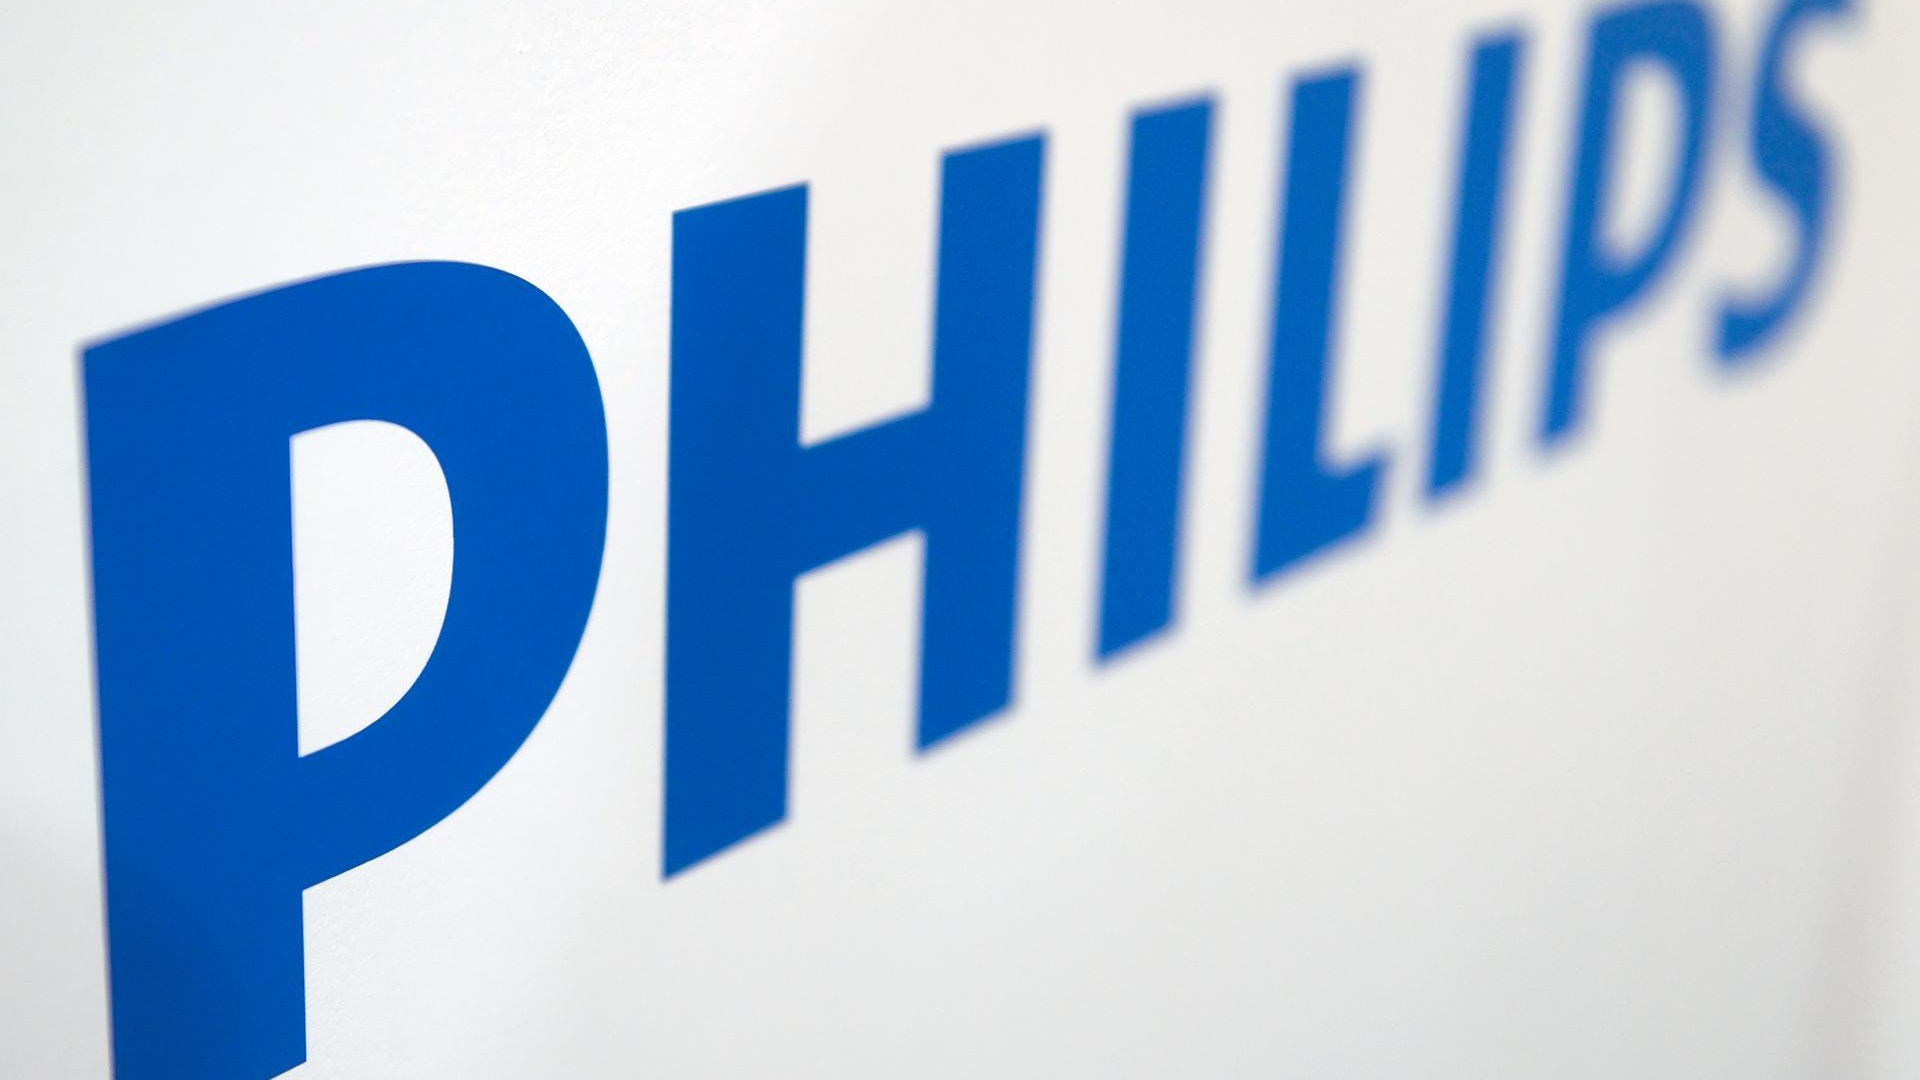 Philips bo zaradi vse večjih izgub ukinil 4000 delovnih mest